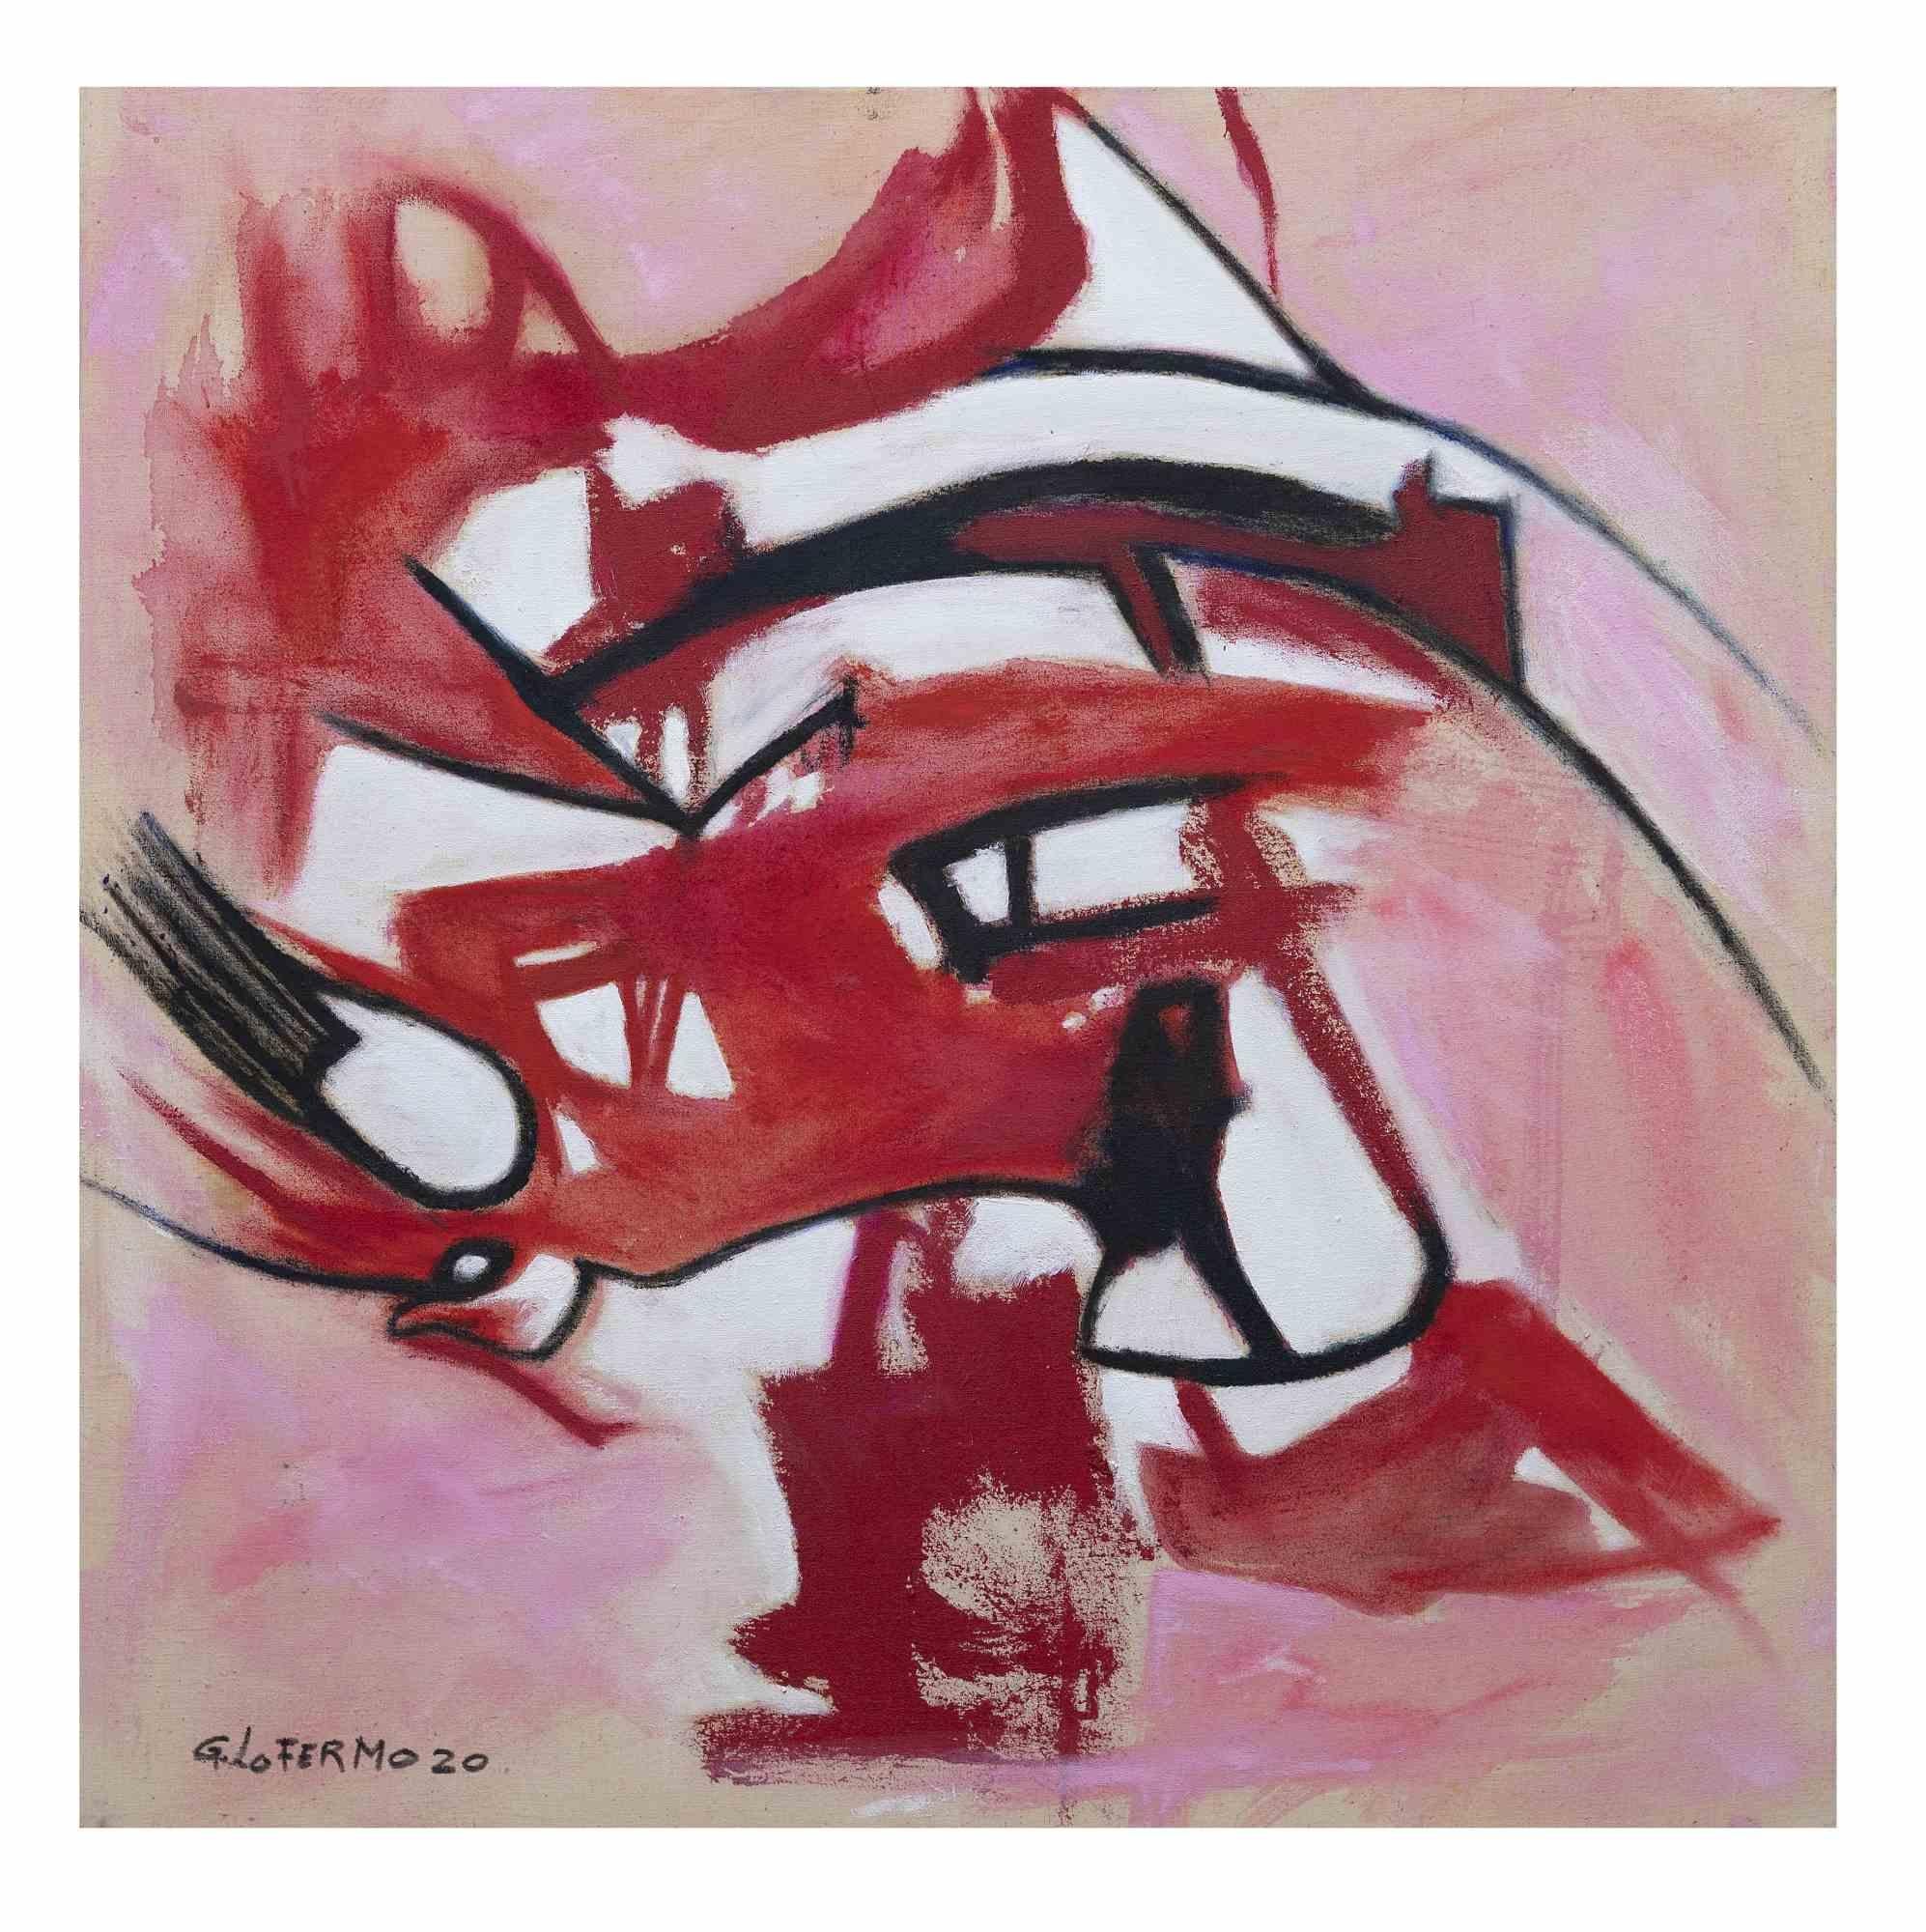 Pink and Red Composition ist ein Originalkunstwerk von Giorgio Lo Fermo (geb. 1947) aus dem Jahr 2020.

Original Ölgemälde auf Leinwand.

Handsigniert, betitelt und datiert auf der Rückseite der Leinwand.

Handsigniert und datiert in der linken